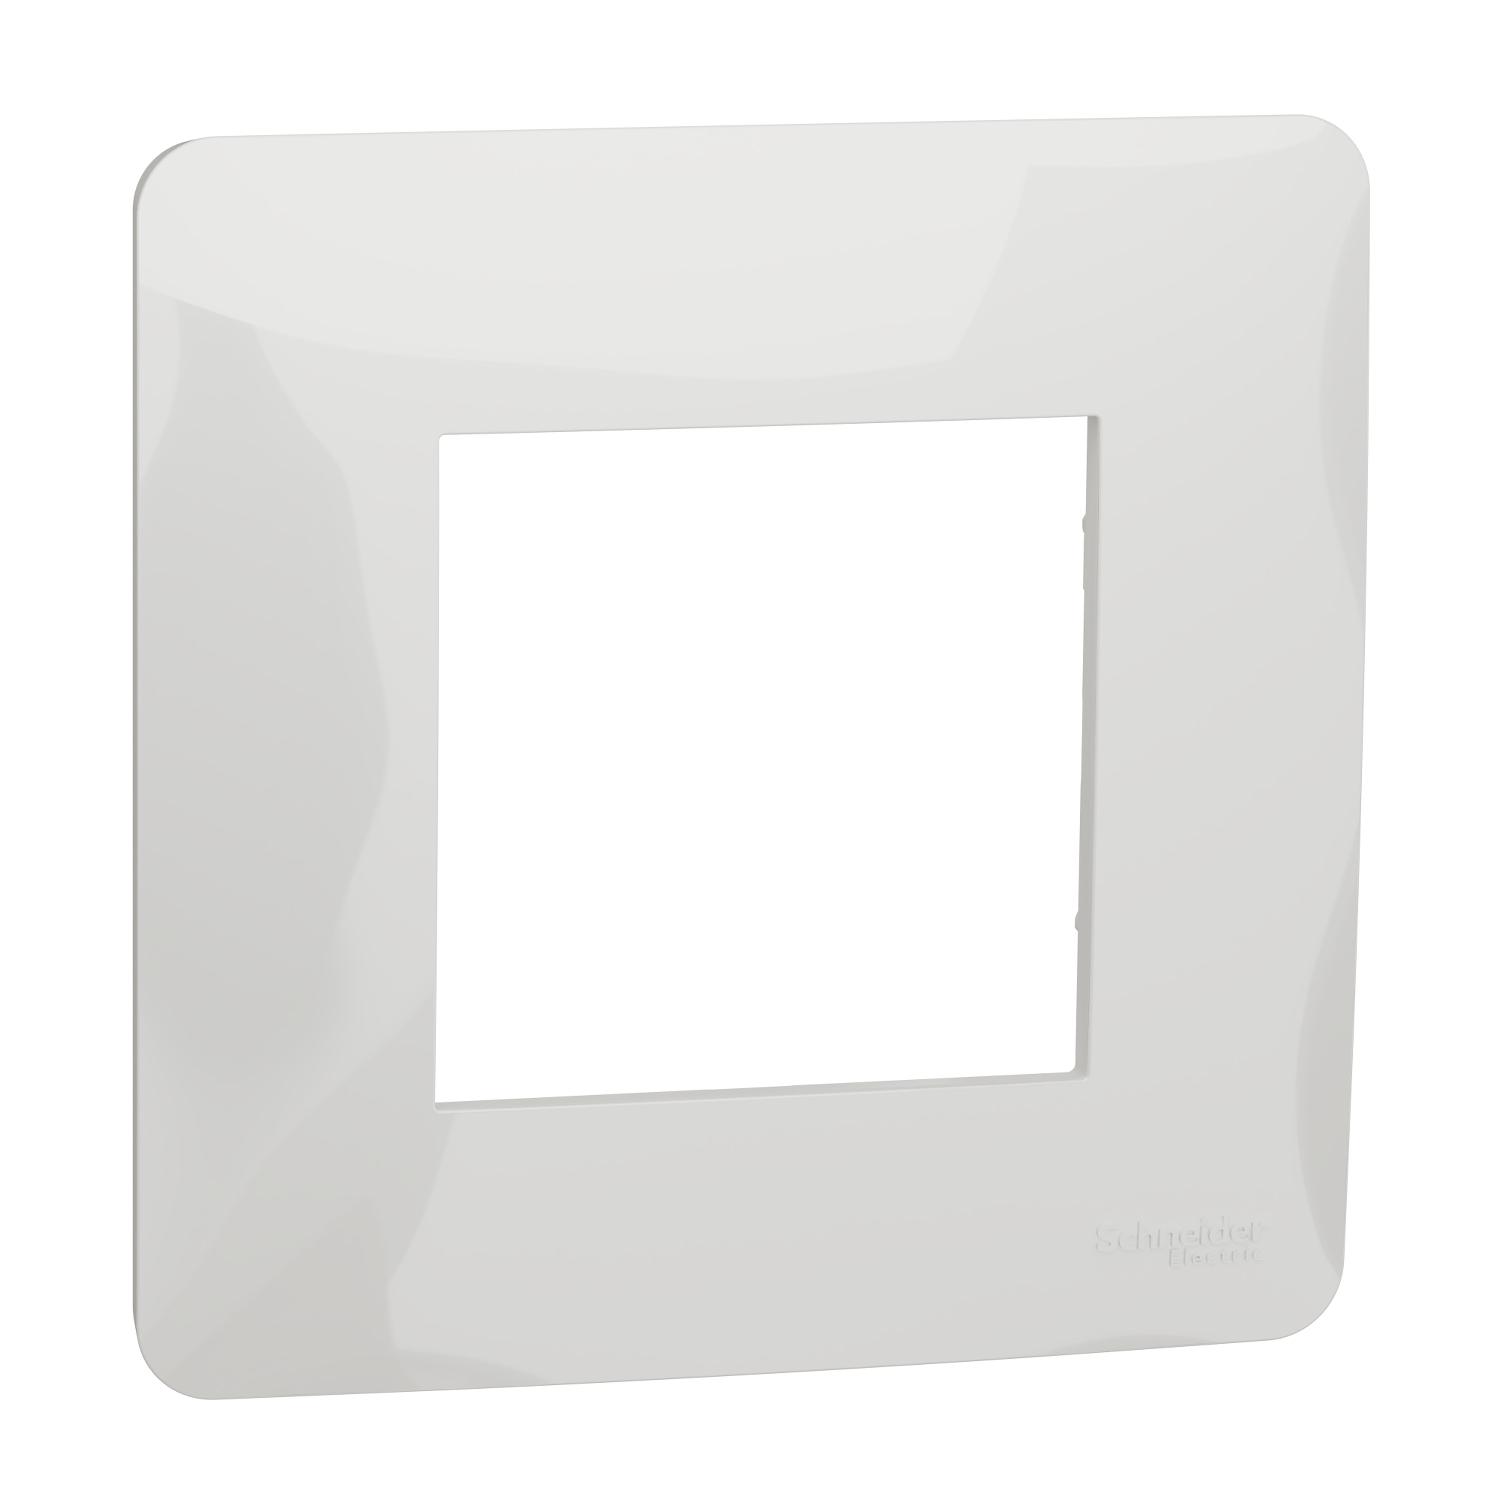 Unica Studio - plaque de finition - Blanc - 1 poste